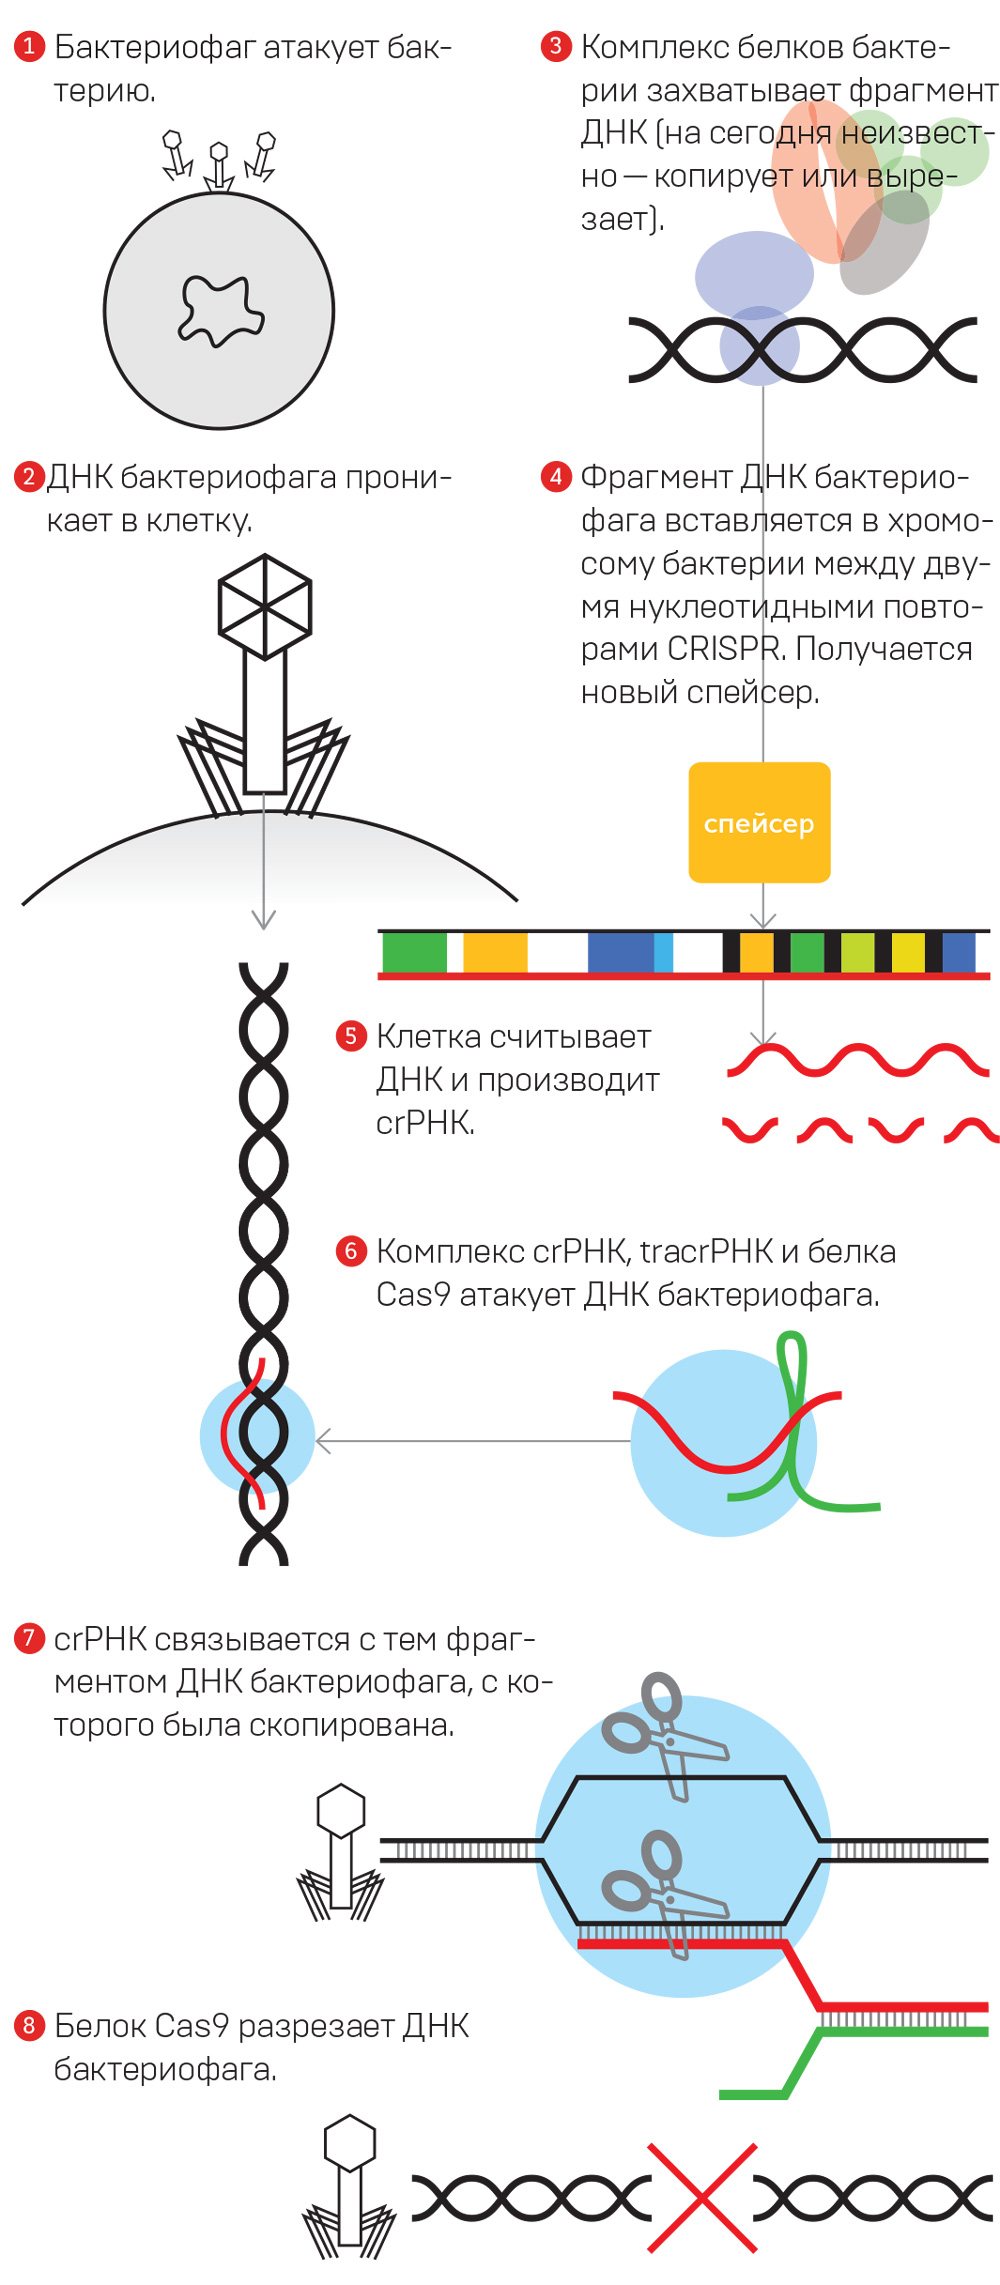 Механизм работы системы CRISPR — иммунной системы клетки (Иллюстрация: «Кот Шрёдингера», www.kot.sh)